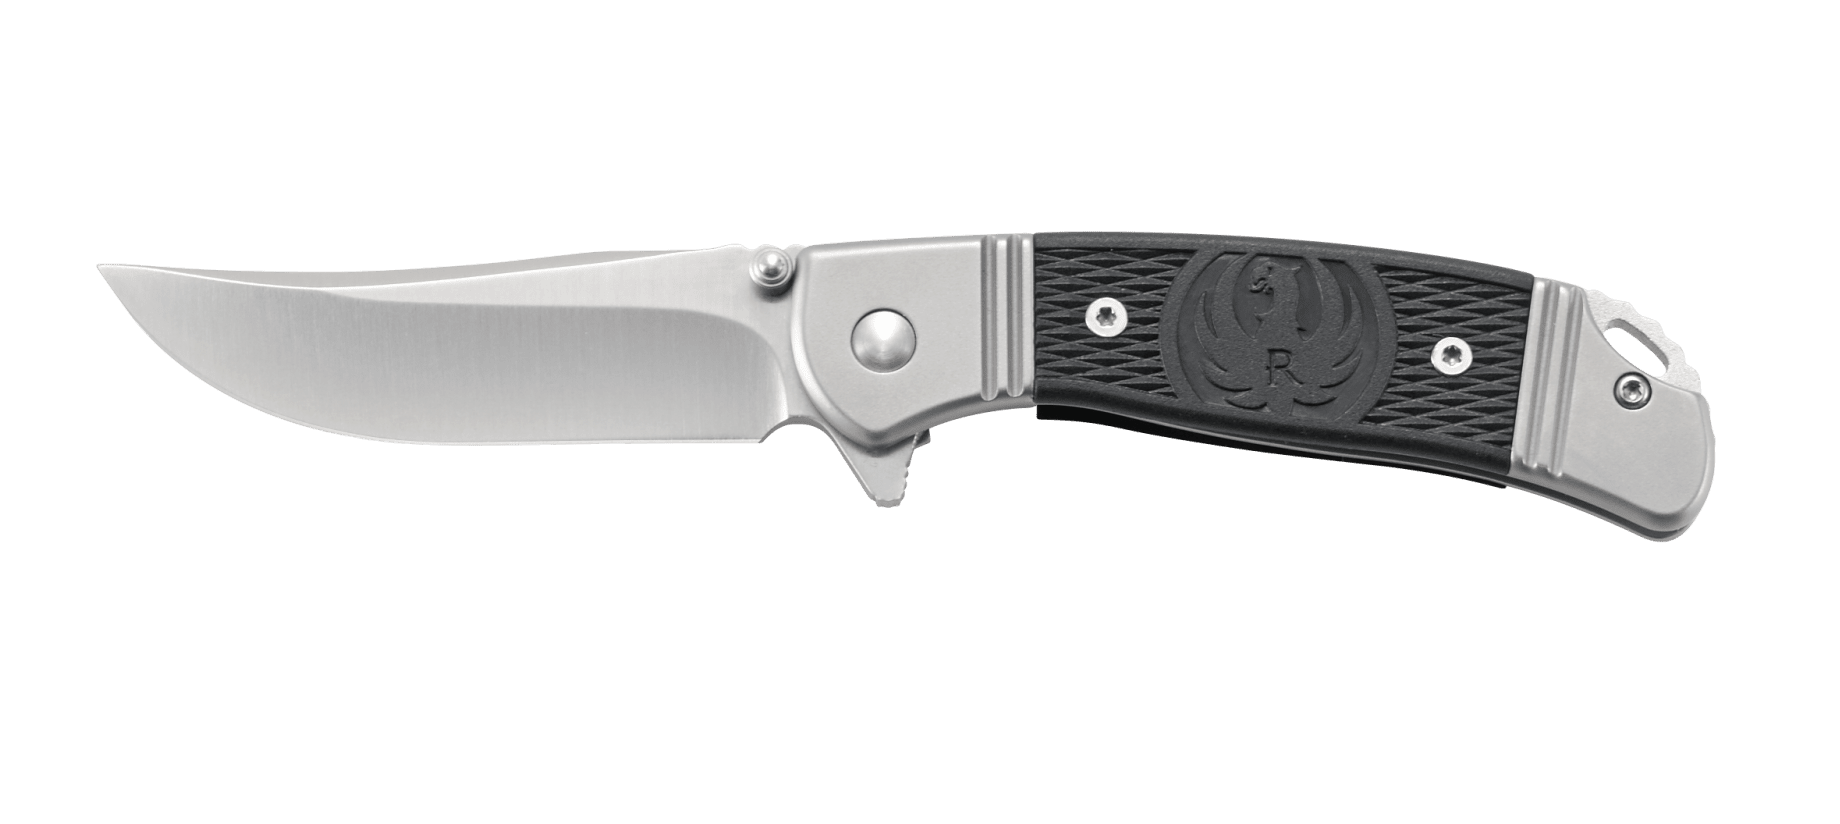 Складной нож CRKT R2303 Ruger® Knives Hollow-Point™ Compact, сталь 8Cr13MOV, рукоять из нерж. стали с вставками из термопластика - фото 8